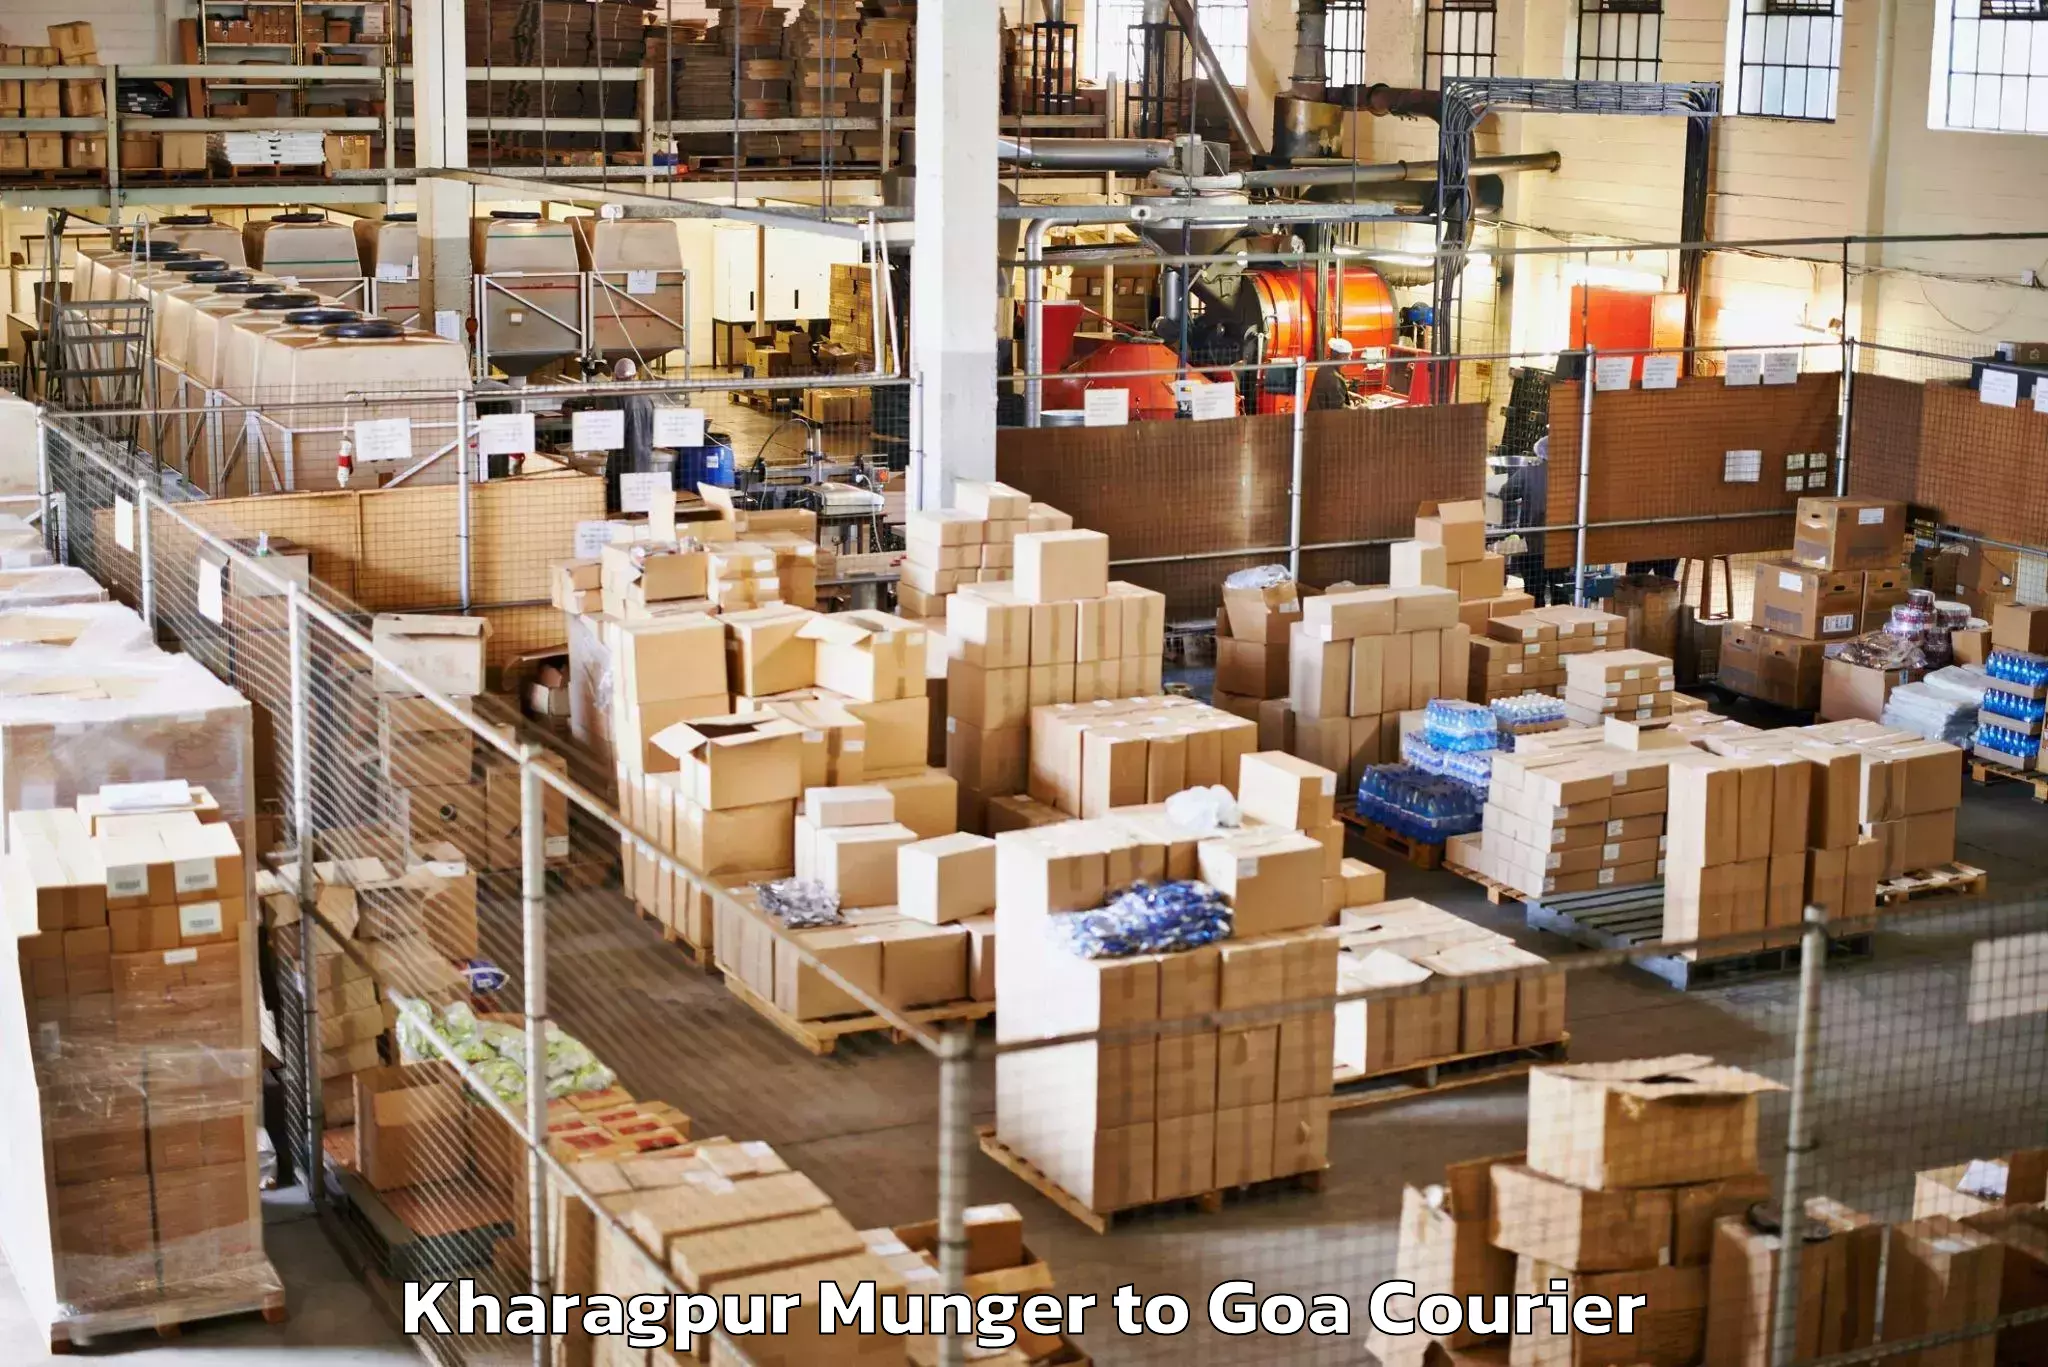 Baggage shipping experience Kharagpur Munger to Bicholim